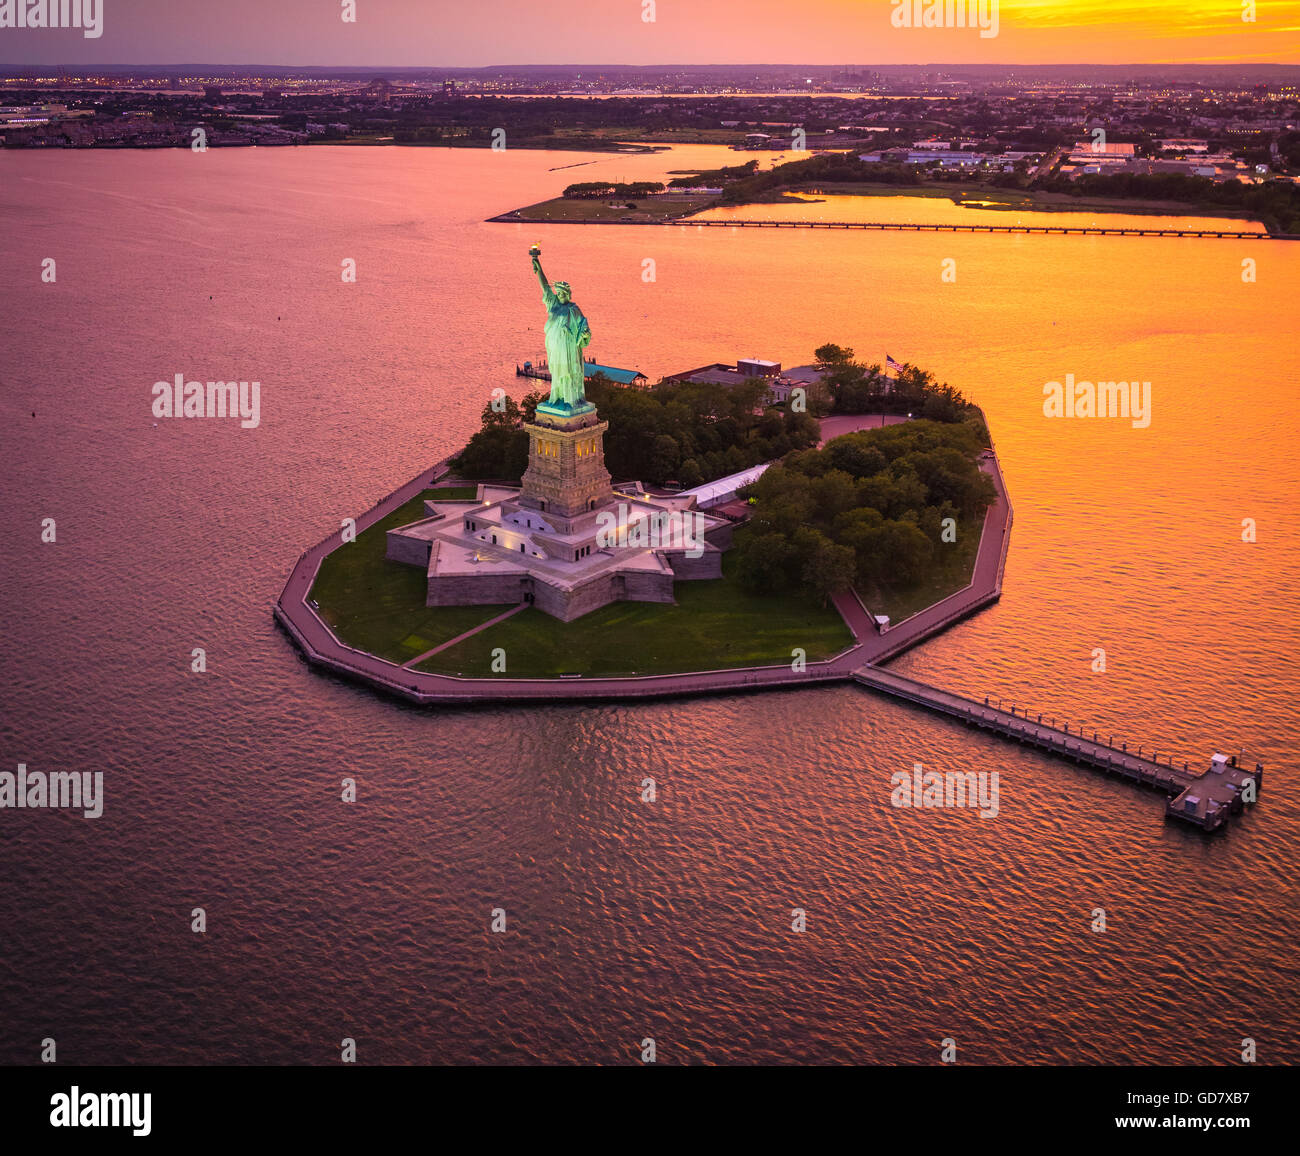 La Estatua de la libertad es una colosal escultura neoclásica en la isla de La Libertad, en el puerto de Nueva York, en la Ciudad de Nueva York Foto de stock